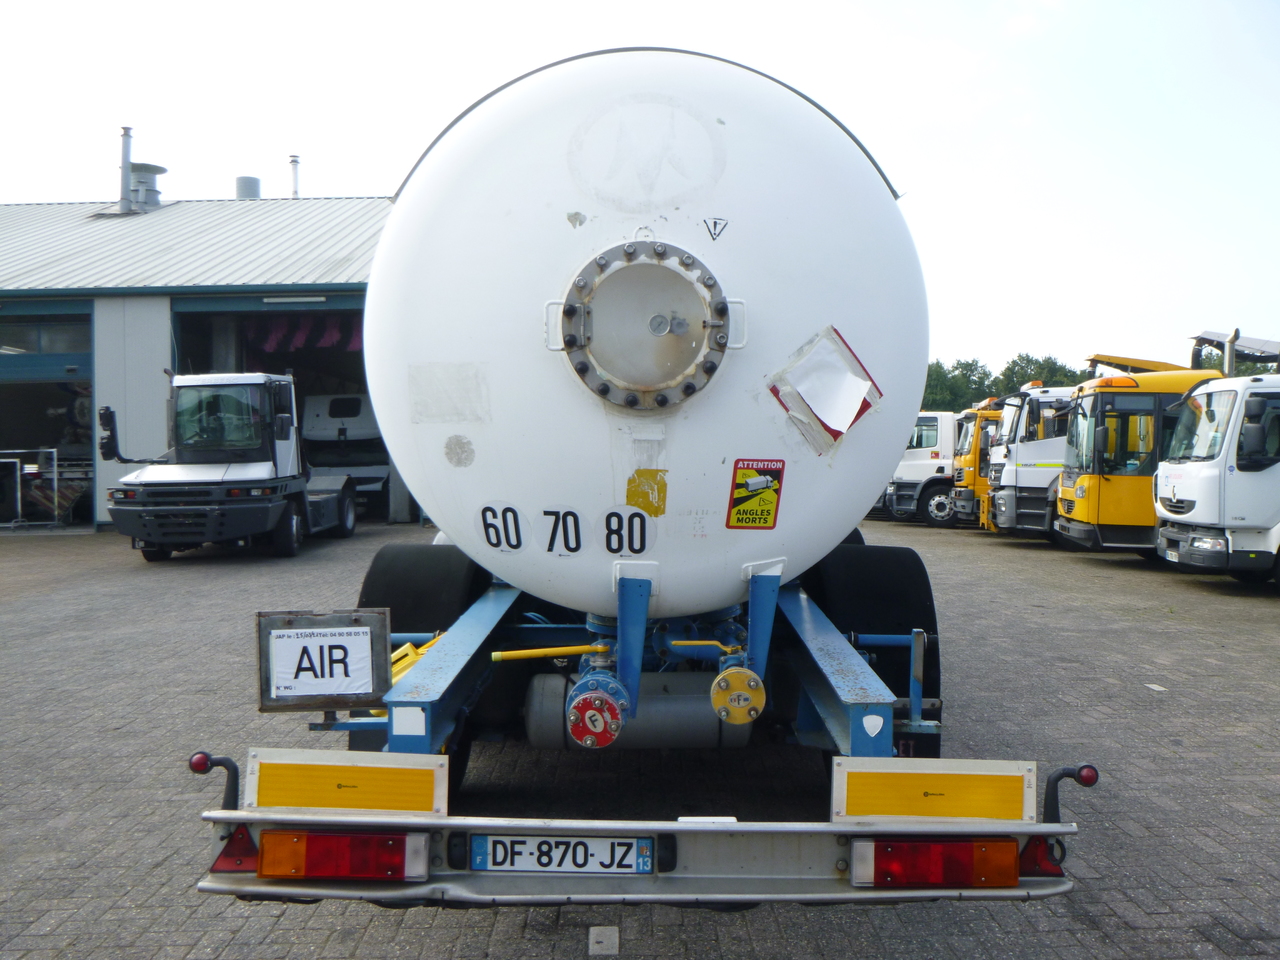 Tankoplegger voor het vervoer van gas Guhur Low-pressure gas tank steel 31.5 m3 / 10 bar (methyl chloride): afbeelding 5